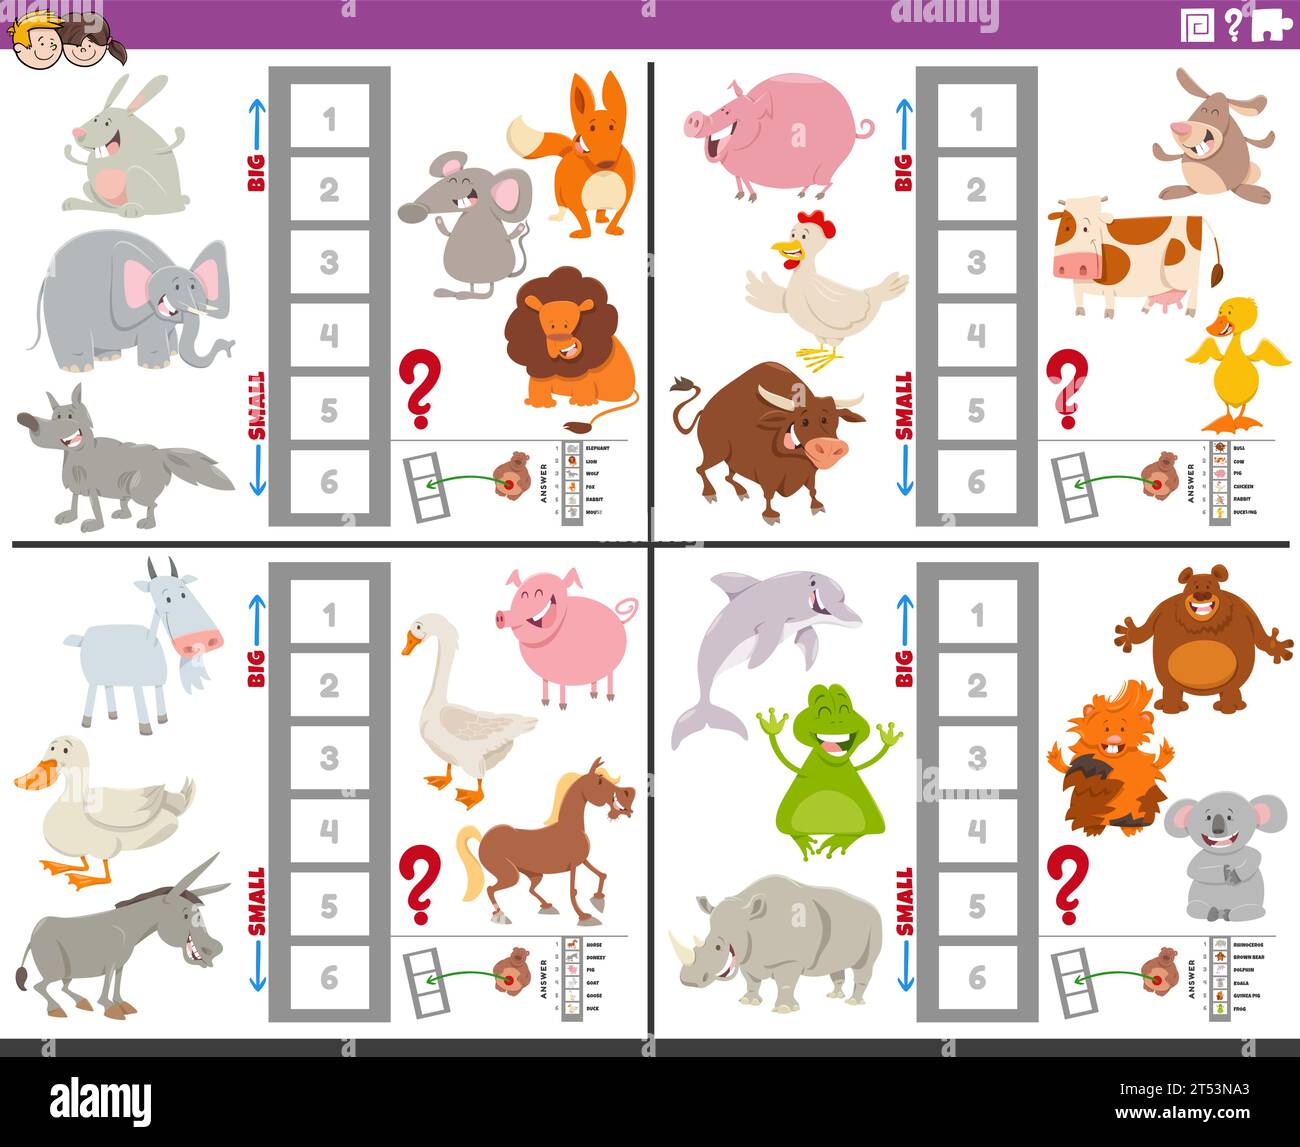 Illustration de dessin animé de jeux éducatifs ensemble de trouver les plus grandes et les plus petites espèces animales Illustration de Vecteur